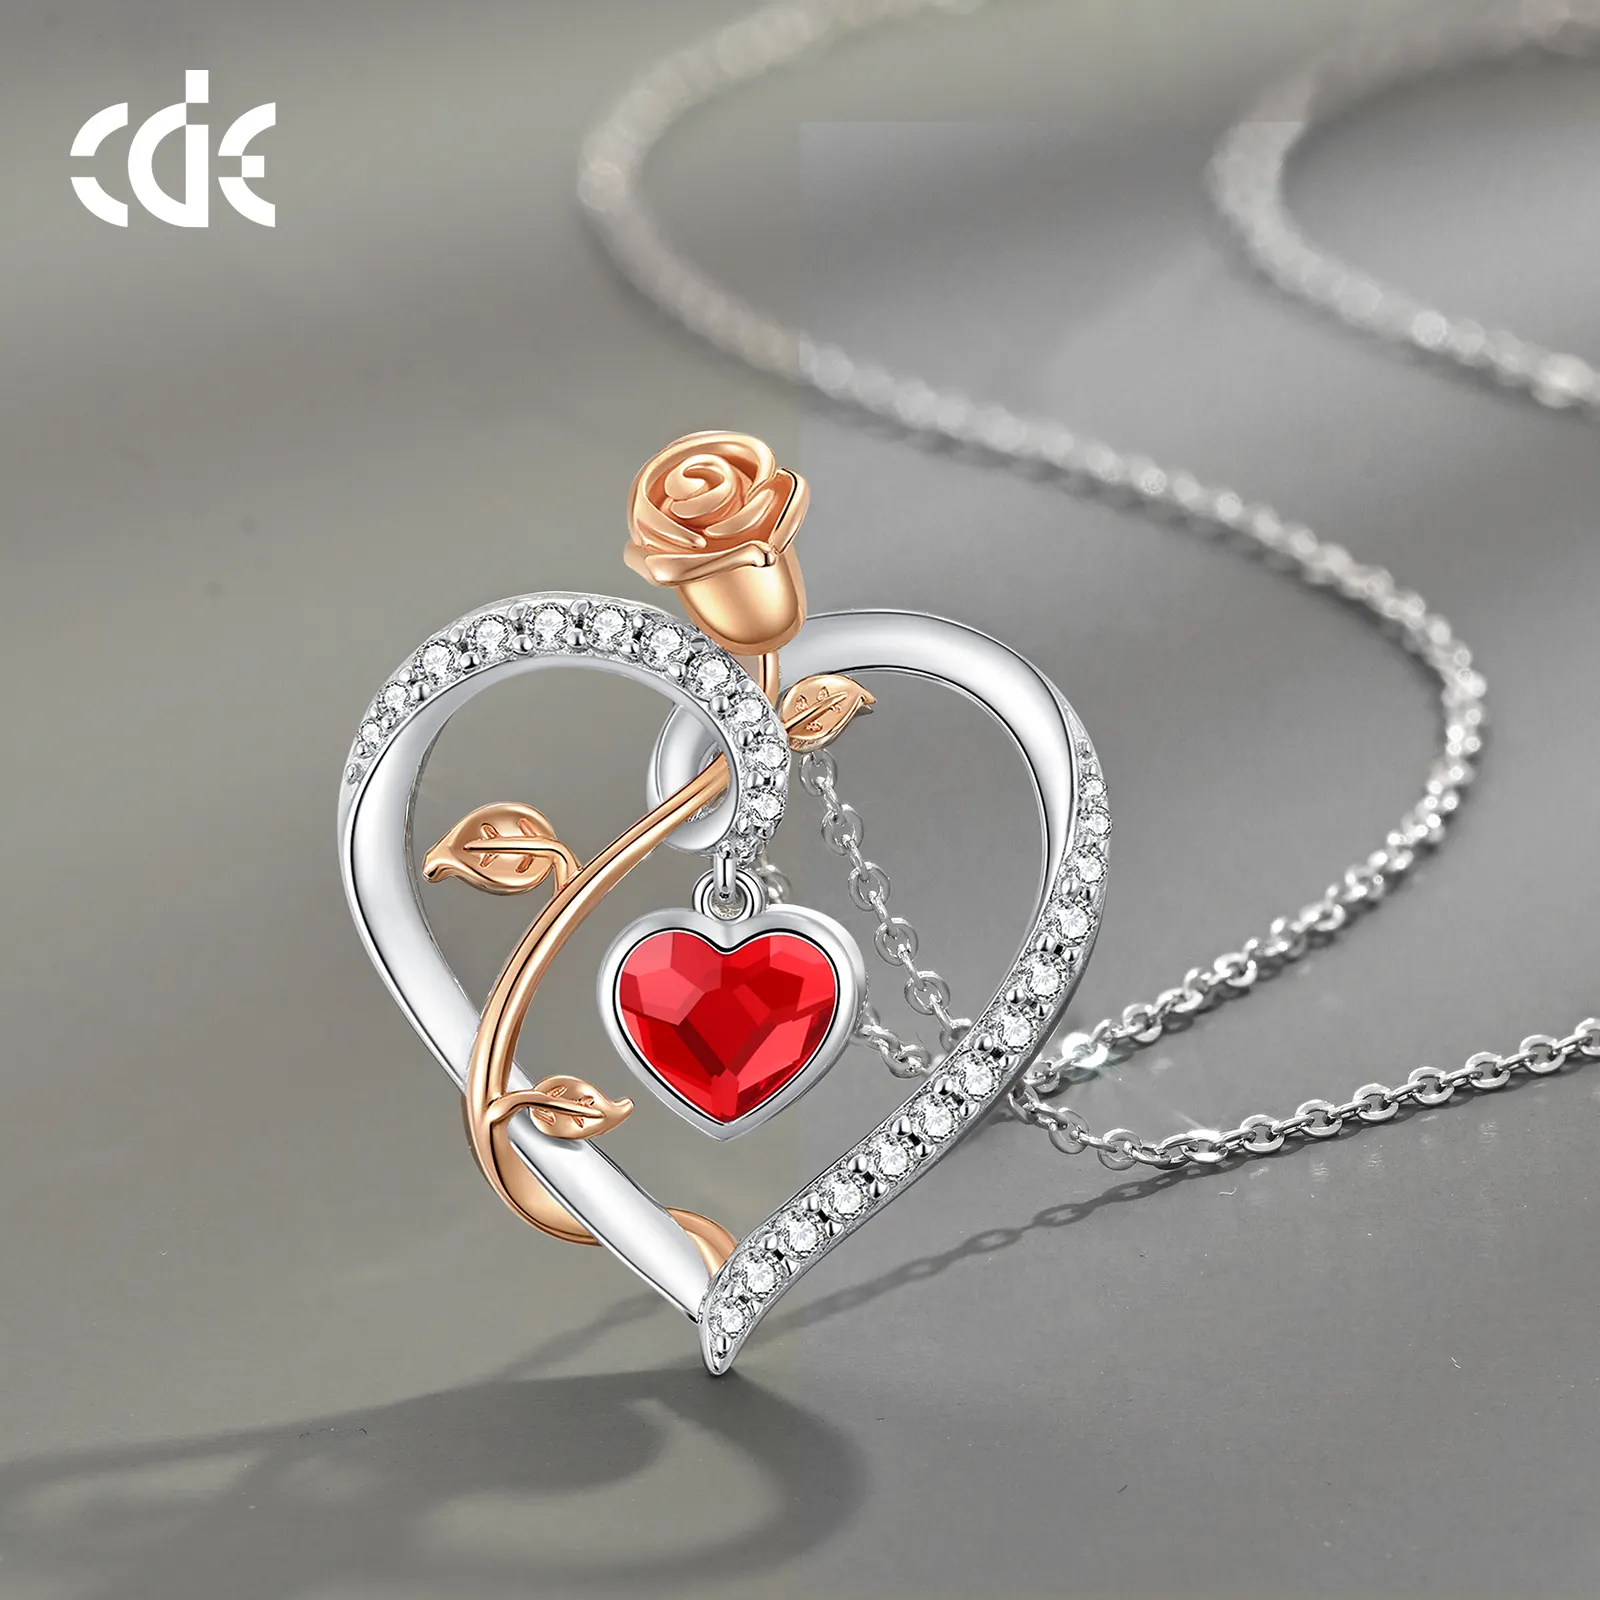 CDE SSYN001 feiner Schmuck 925 Sterling-Silberstein rote Kristalle mit Zirkonium-Halsband Großhandel Rose Blume Design-Halsband